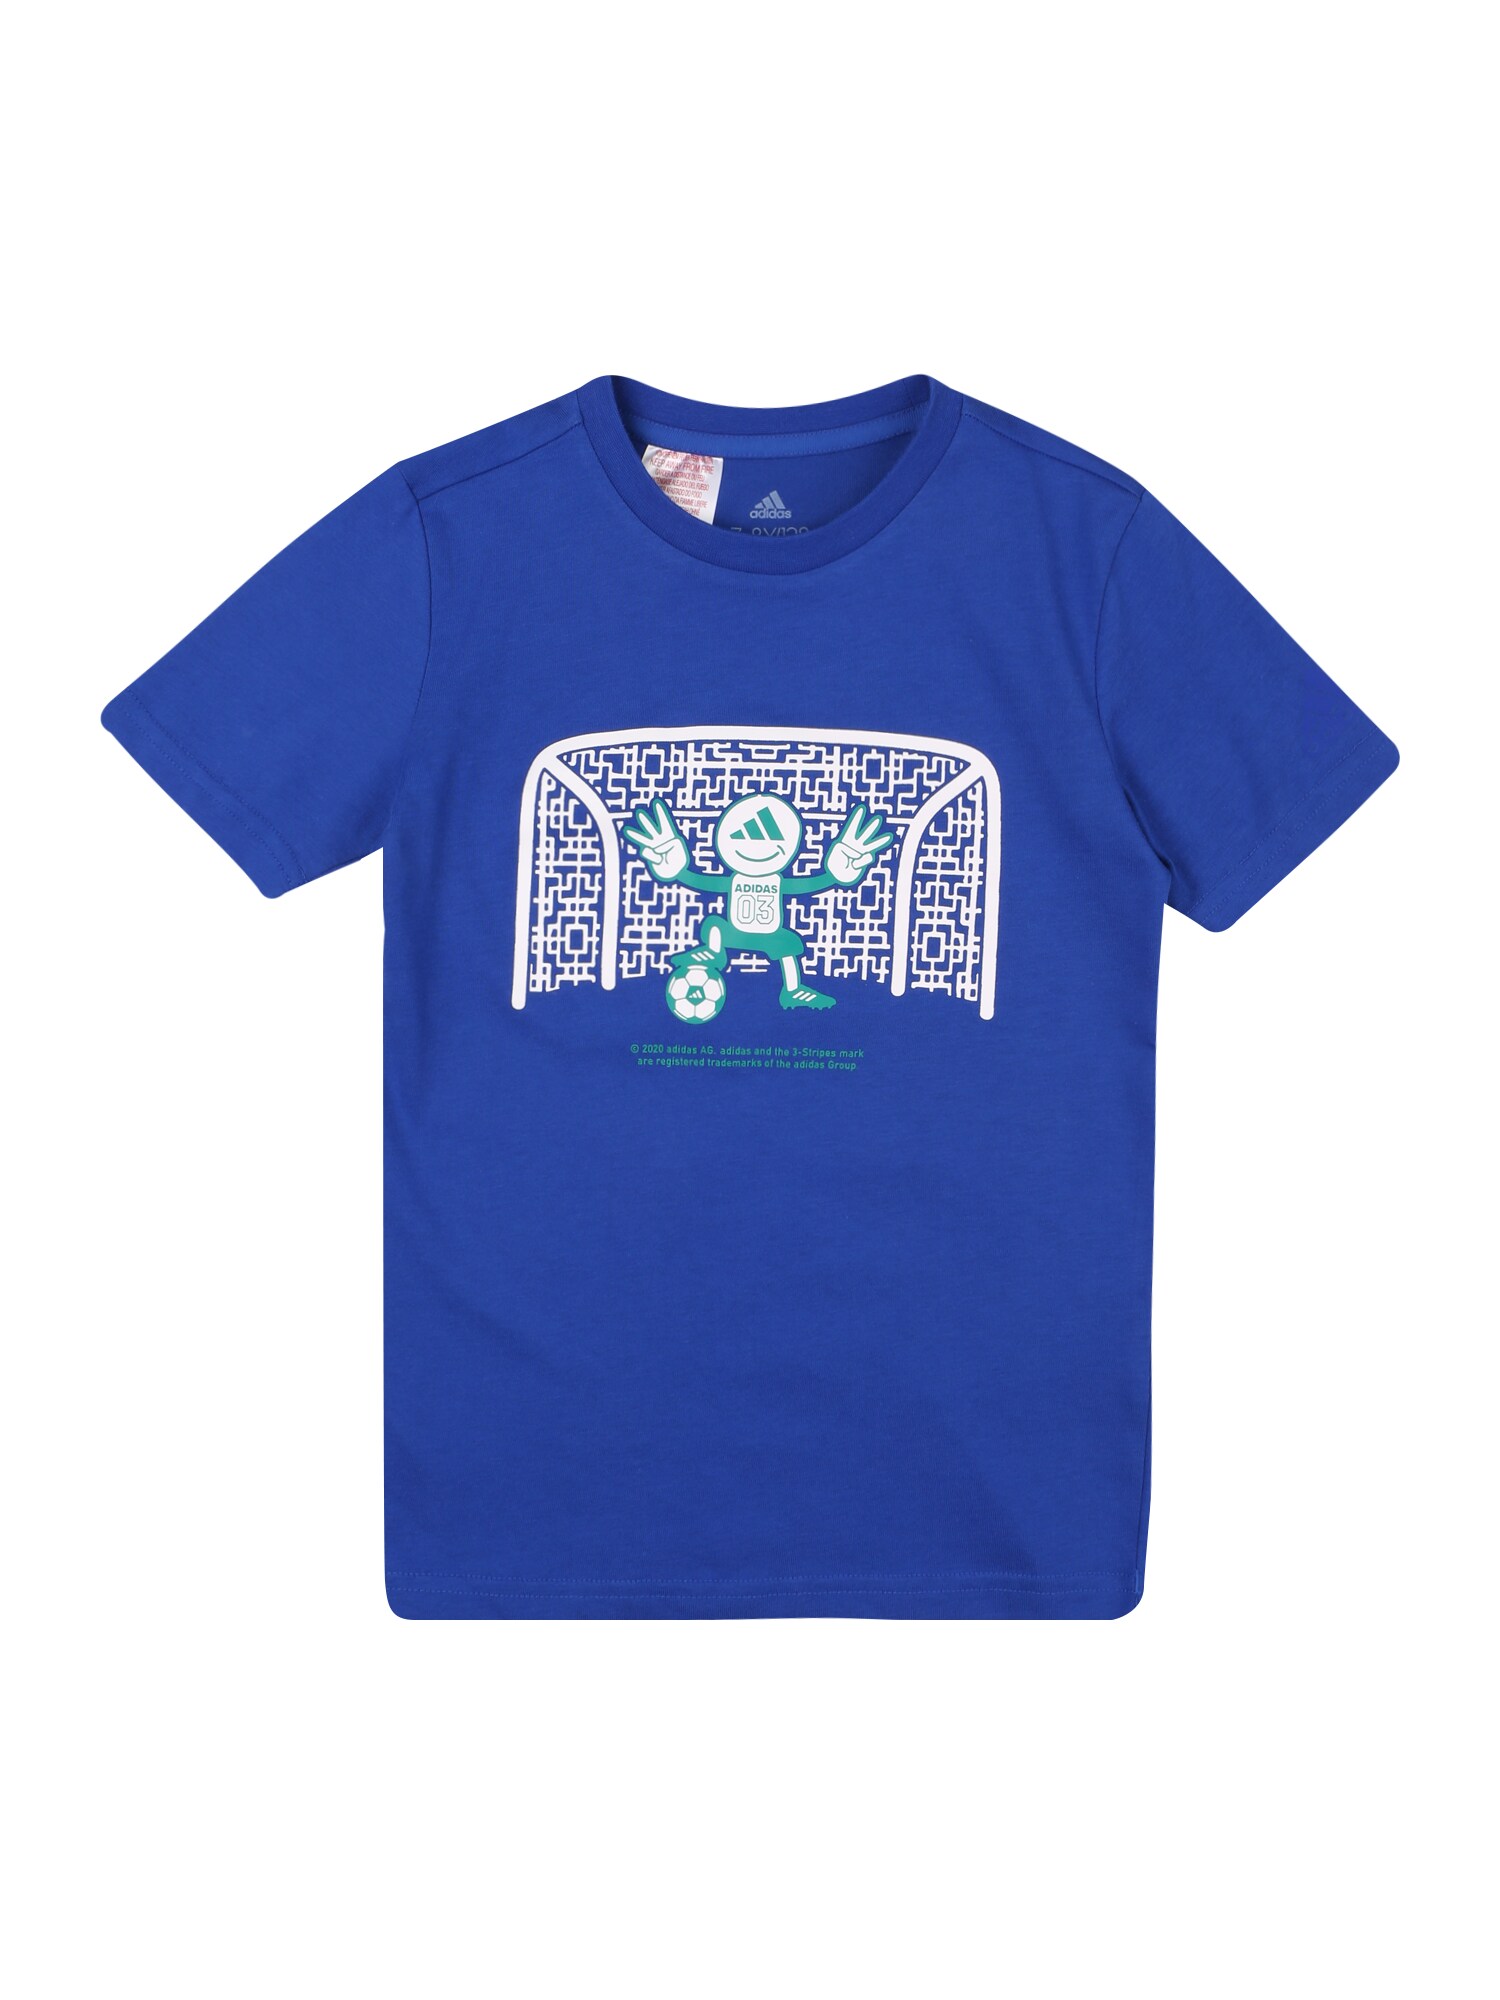 ADIDAS PERFORMANCE Sportiniai marškinėliai  sodri mėlyna („karališka“) / balta / nefrito spalva